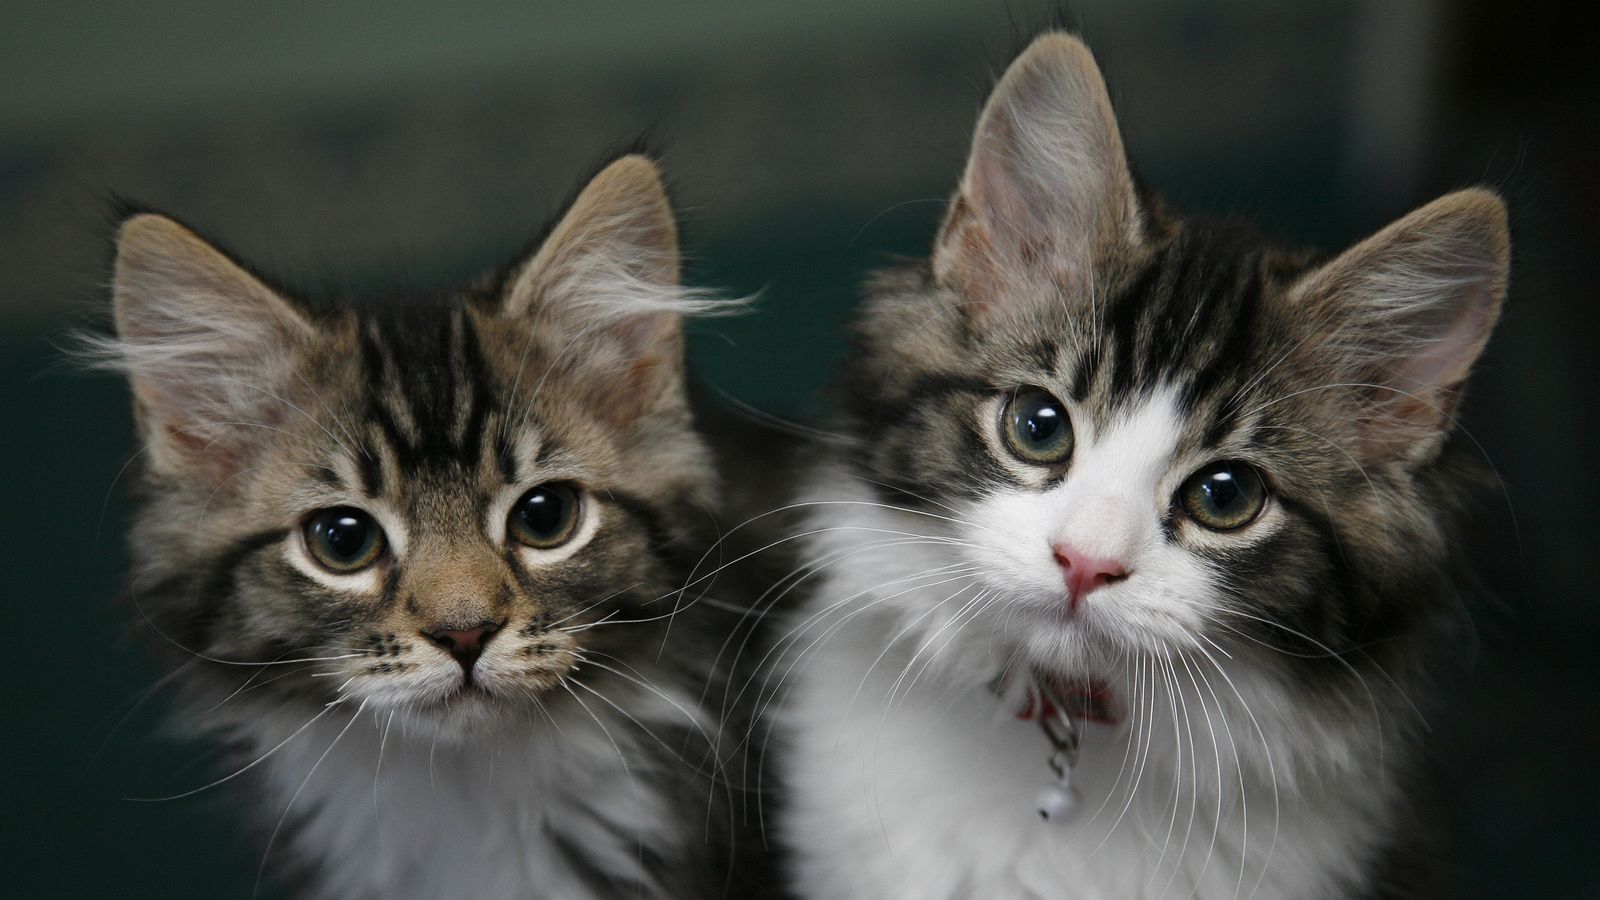 Gatti domestici chiamati “Invasive Alien Species”, dall’Istituto Polacco |  notizie di scienza e tecnologia